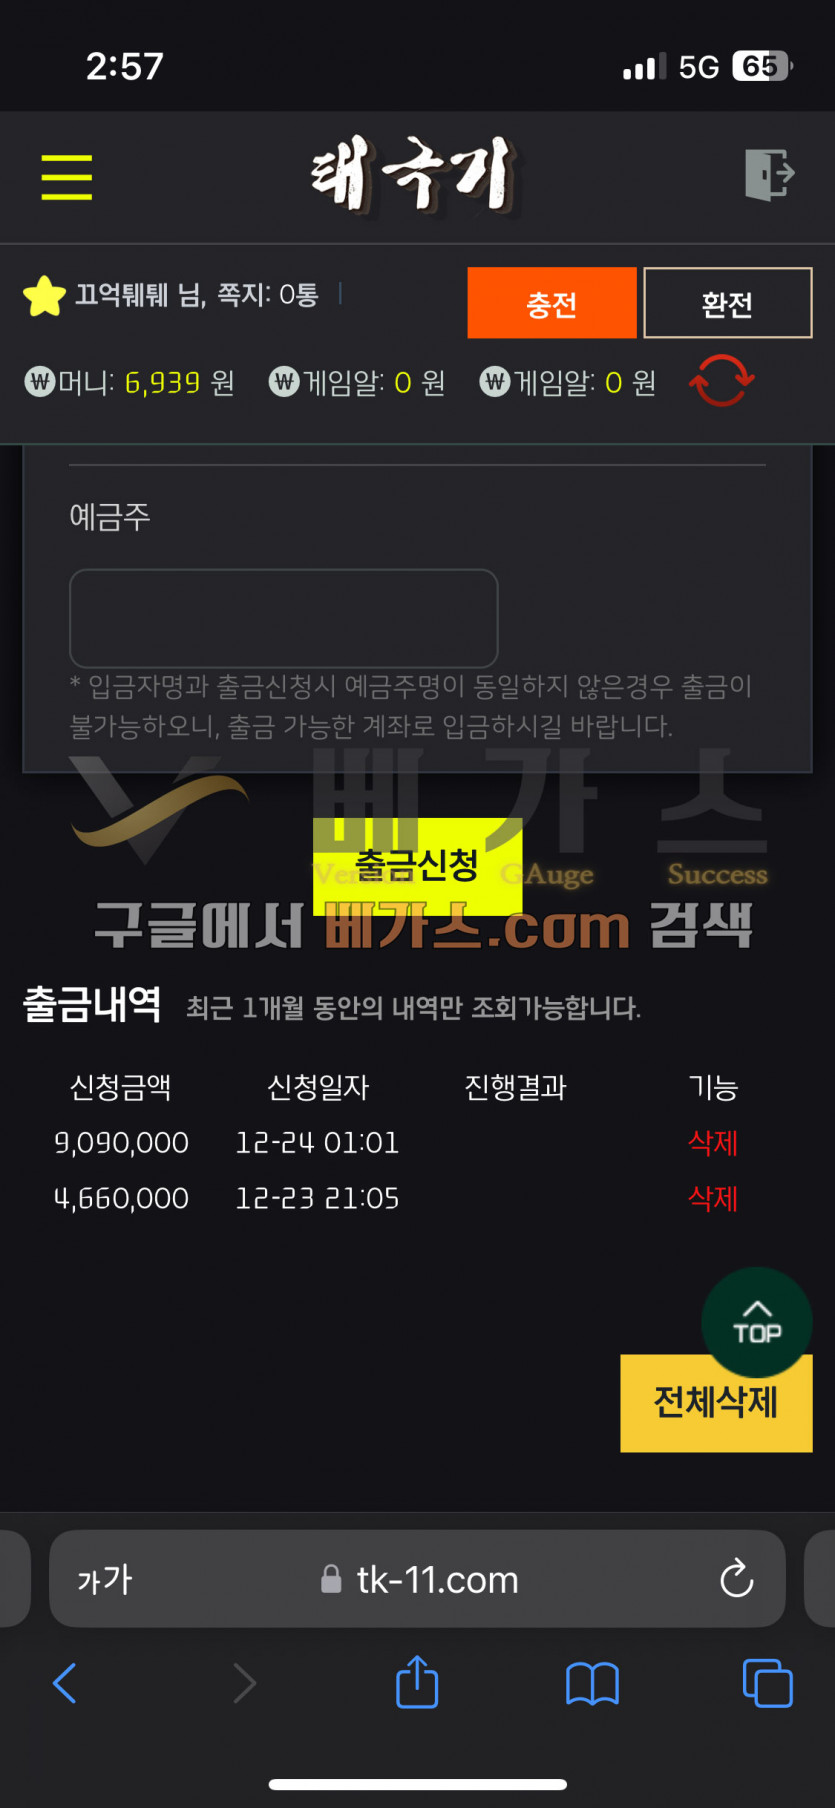 태극기 먹튀사건 피해자의 2023년 12월 24일 909만원 환전 신청 내역